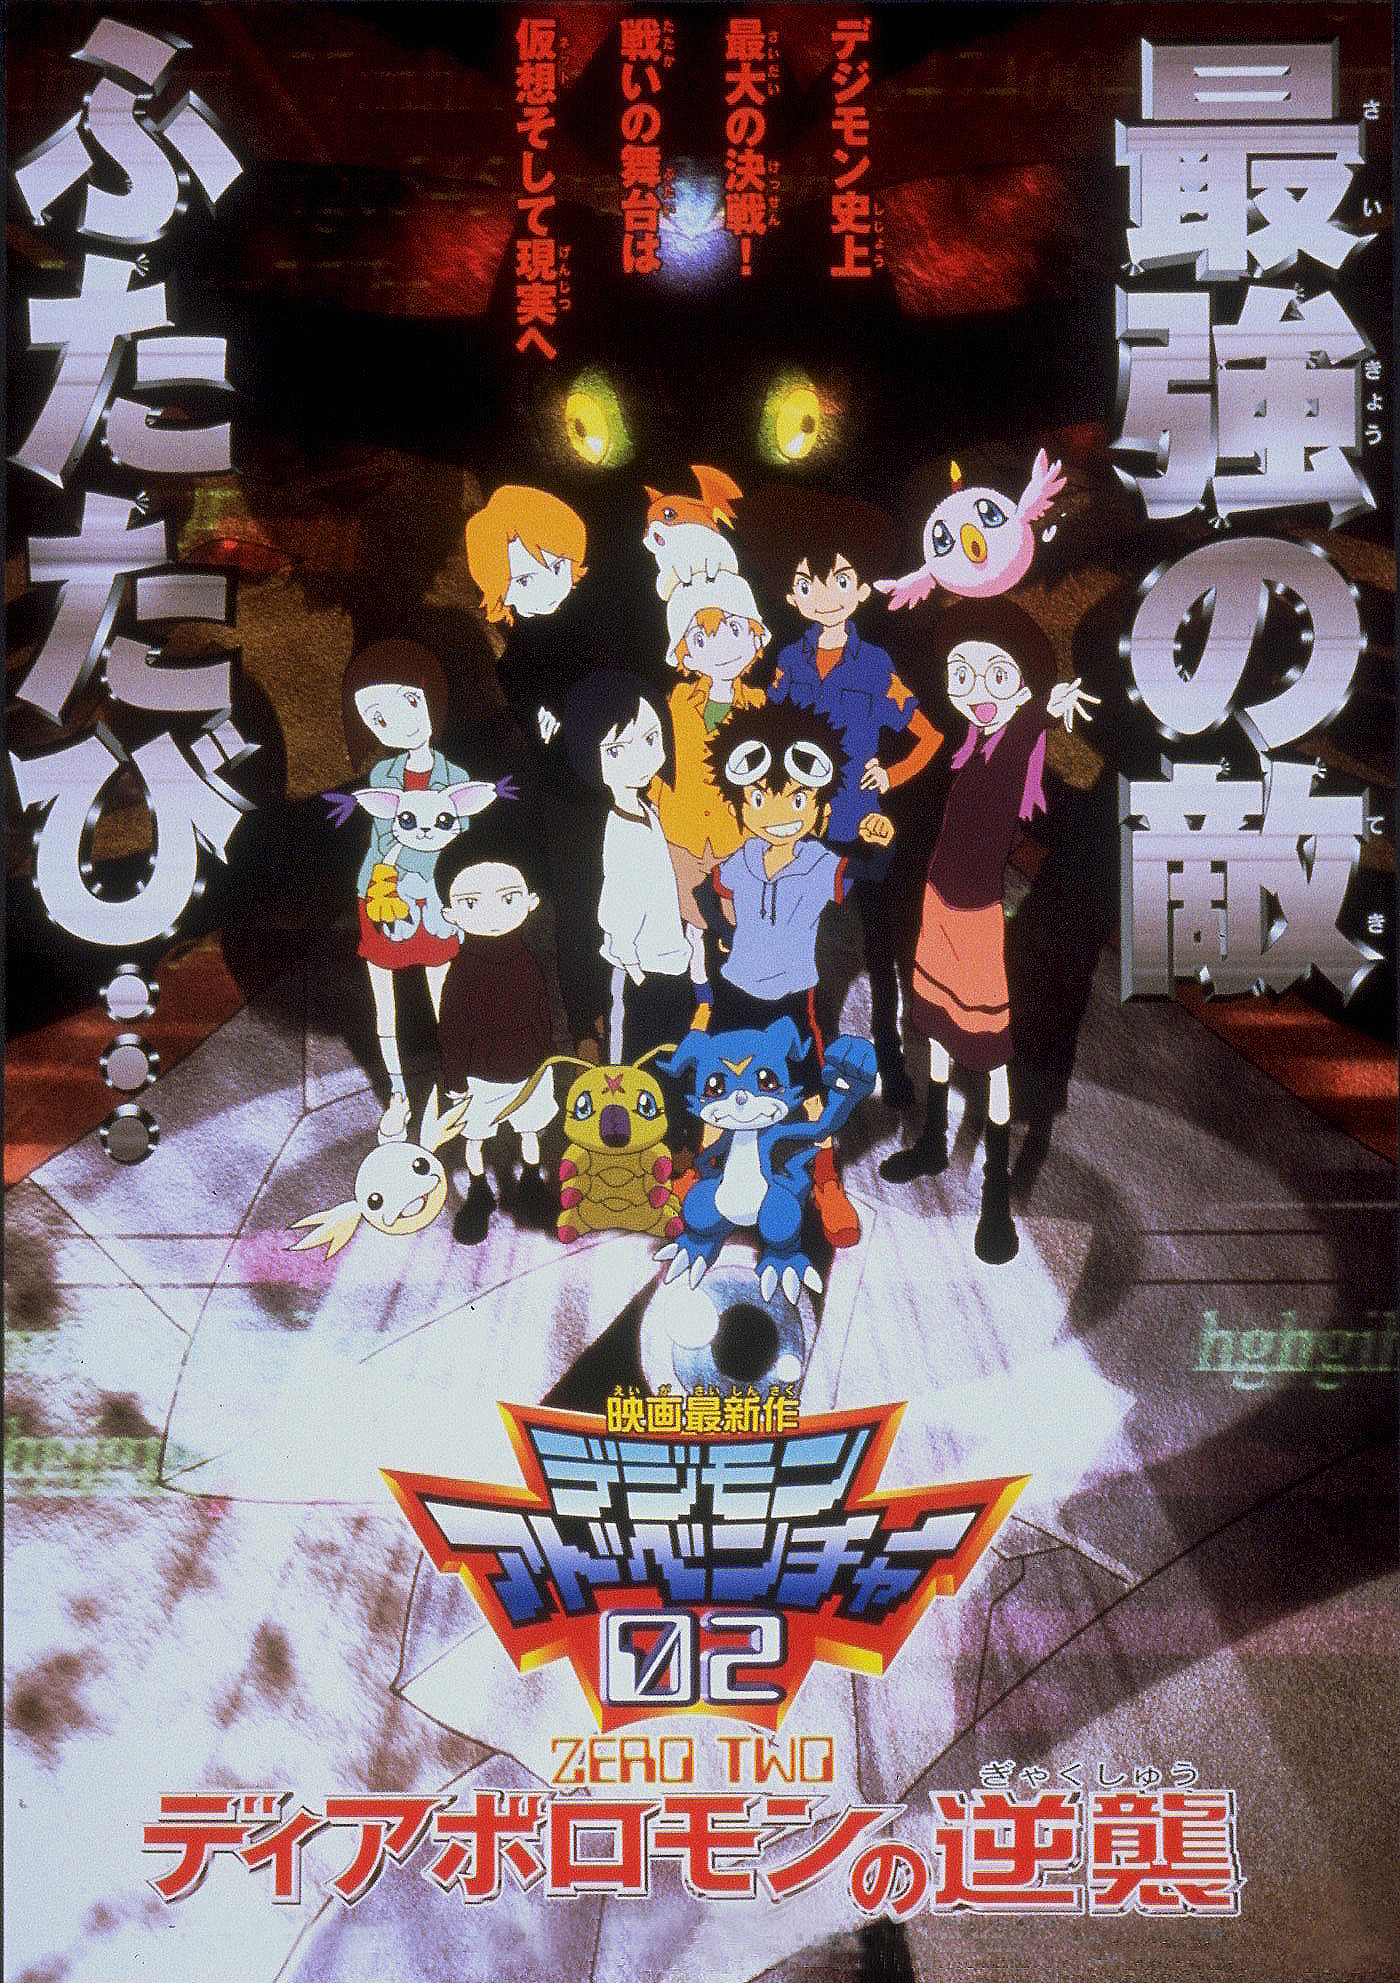 Digimon 02: filme da temporada tem novas informações divulgadas – ANMTV